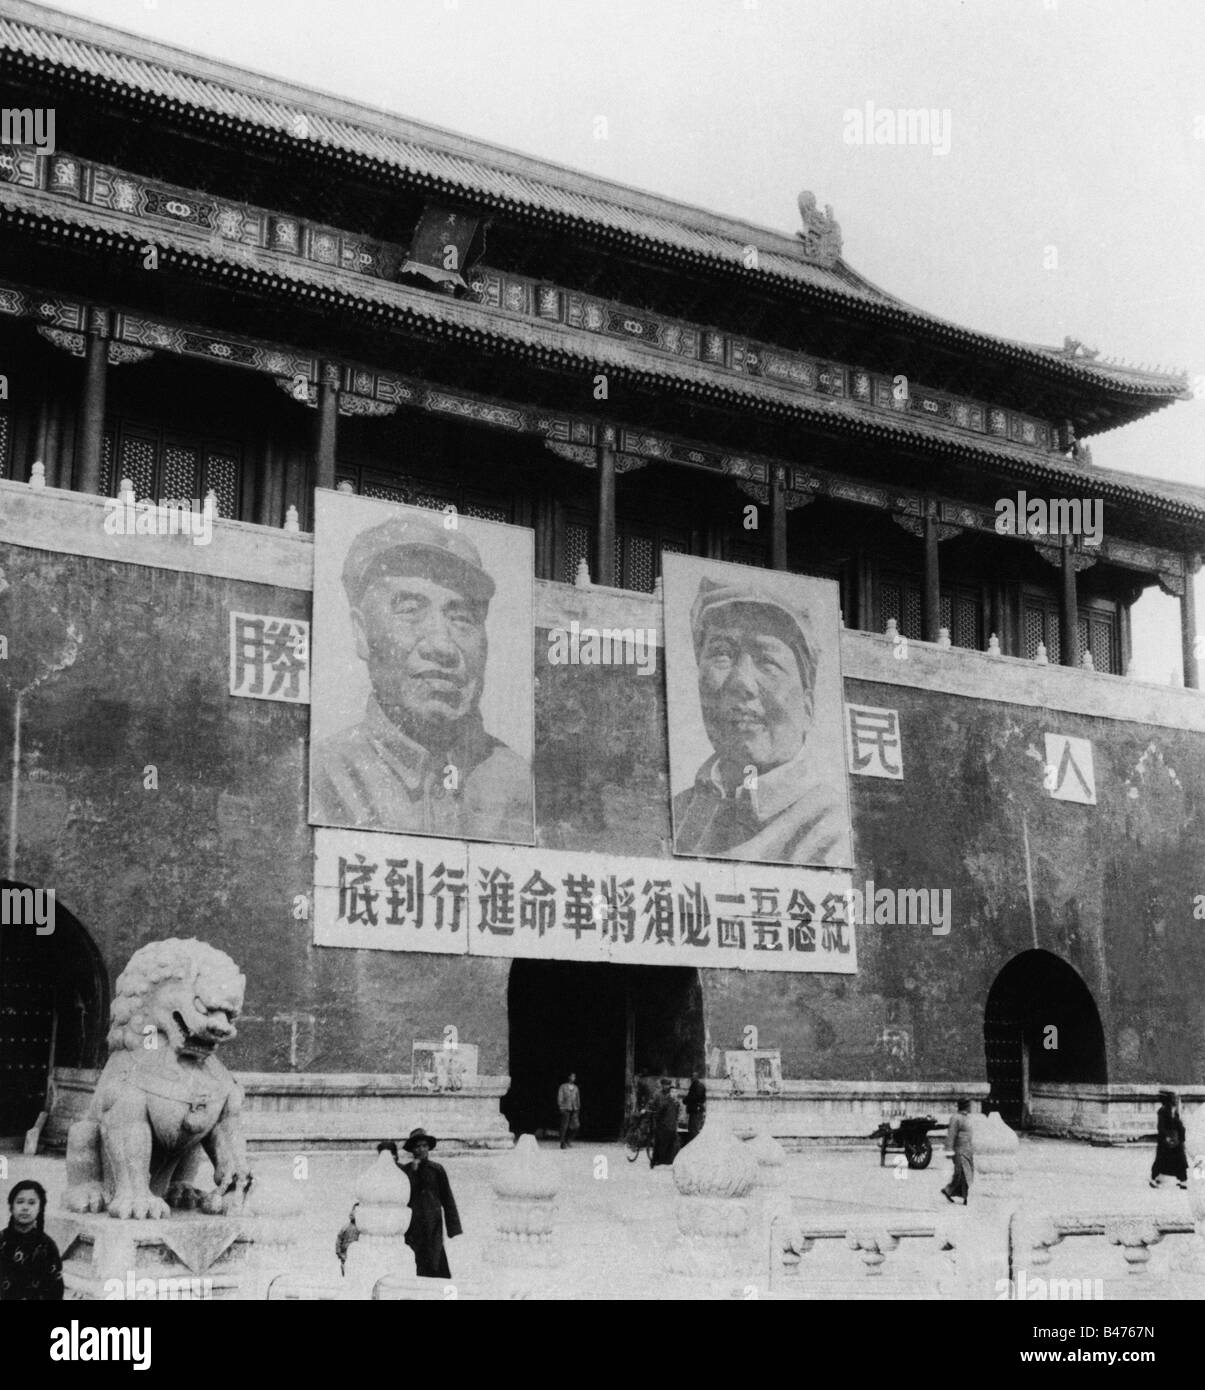 Géographie / voyages, Chine, politique, Beijing, Tiananmen avec des portraits de Mao Zedong, années 1950, Banque D'Images